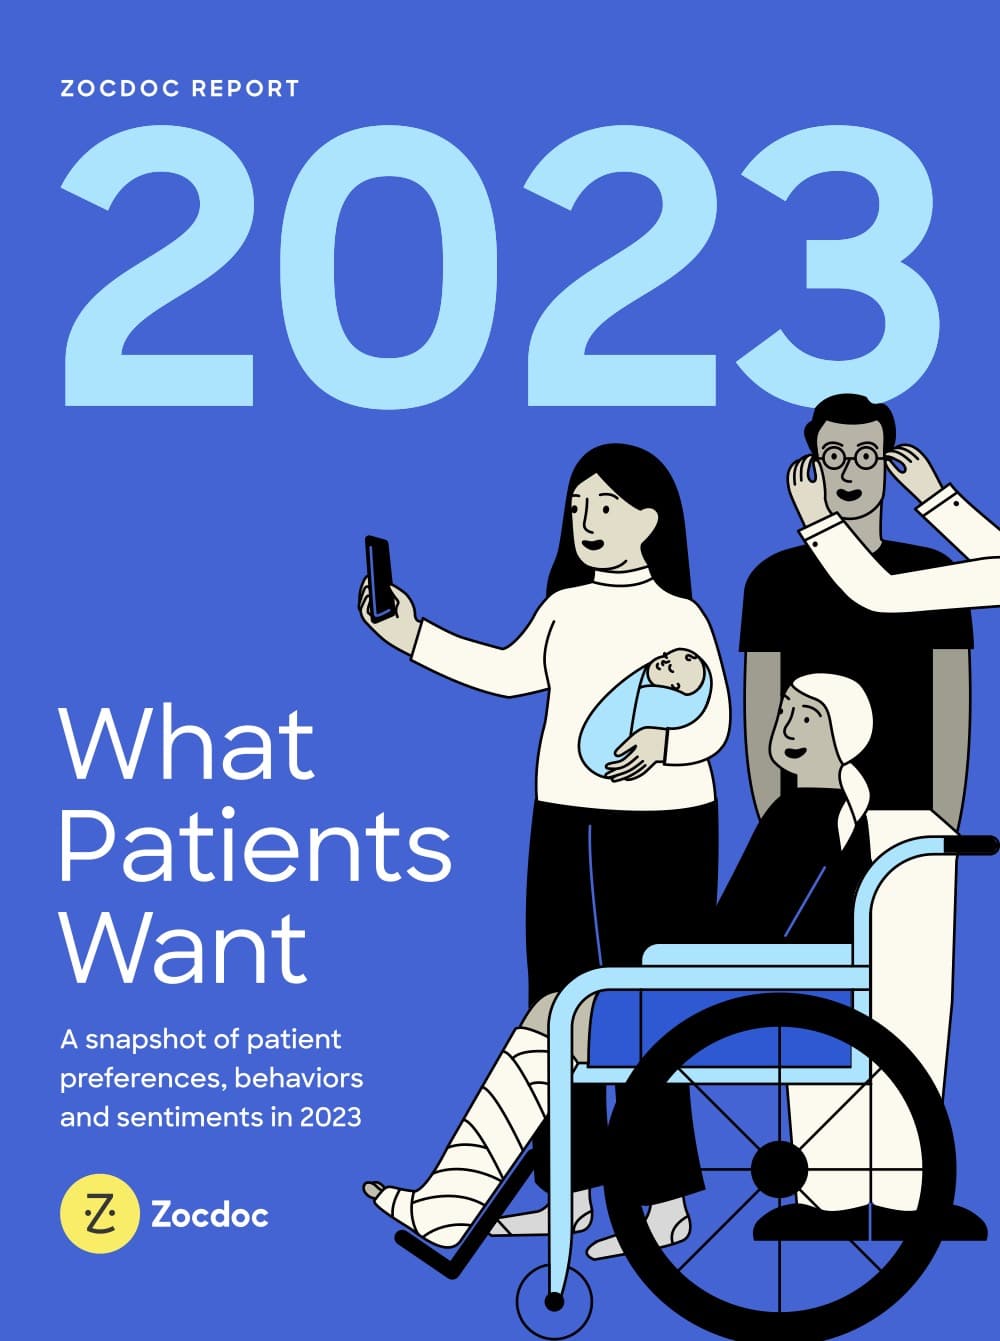 What Patients Want: Zocdoc's Report Reveals Patient Preferences